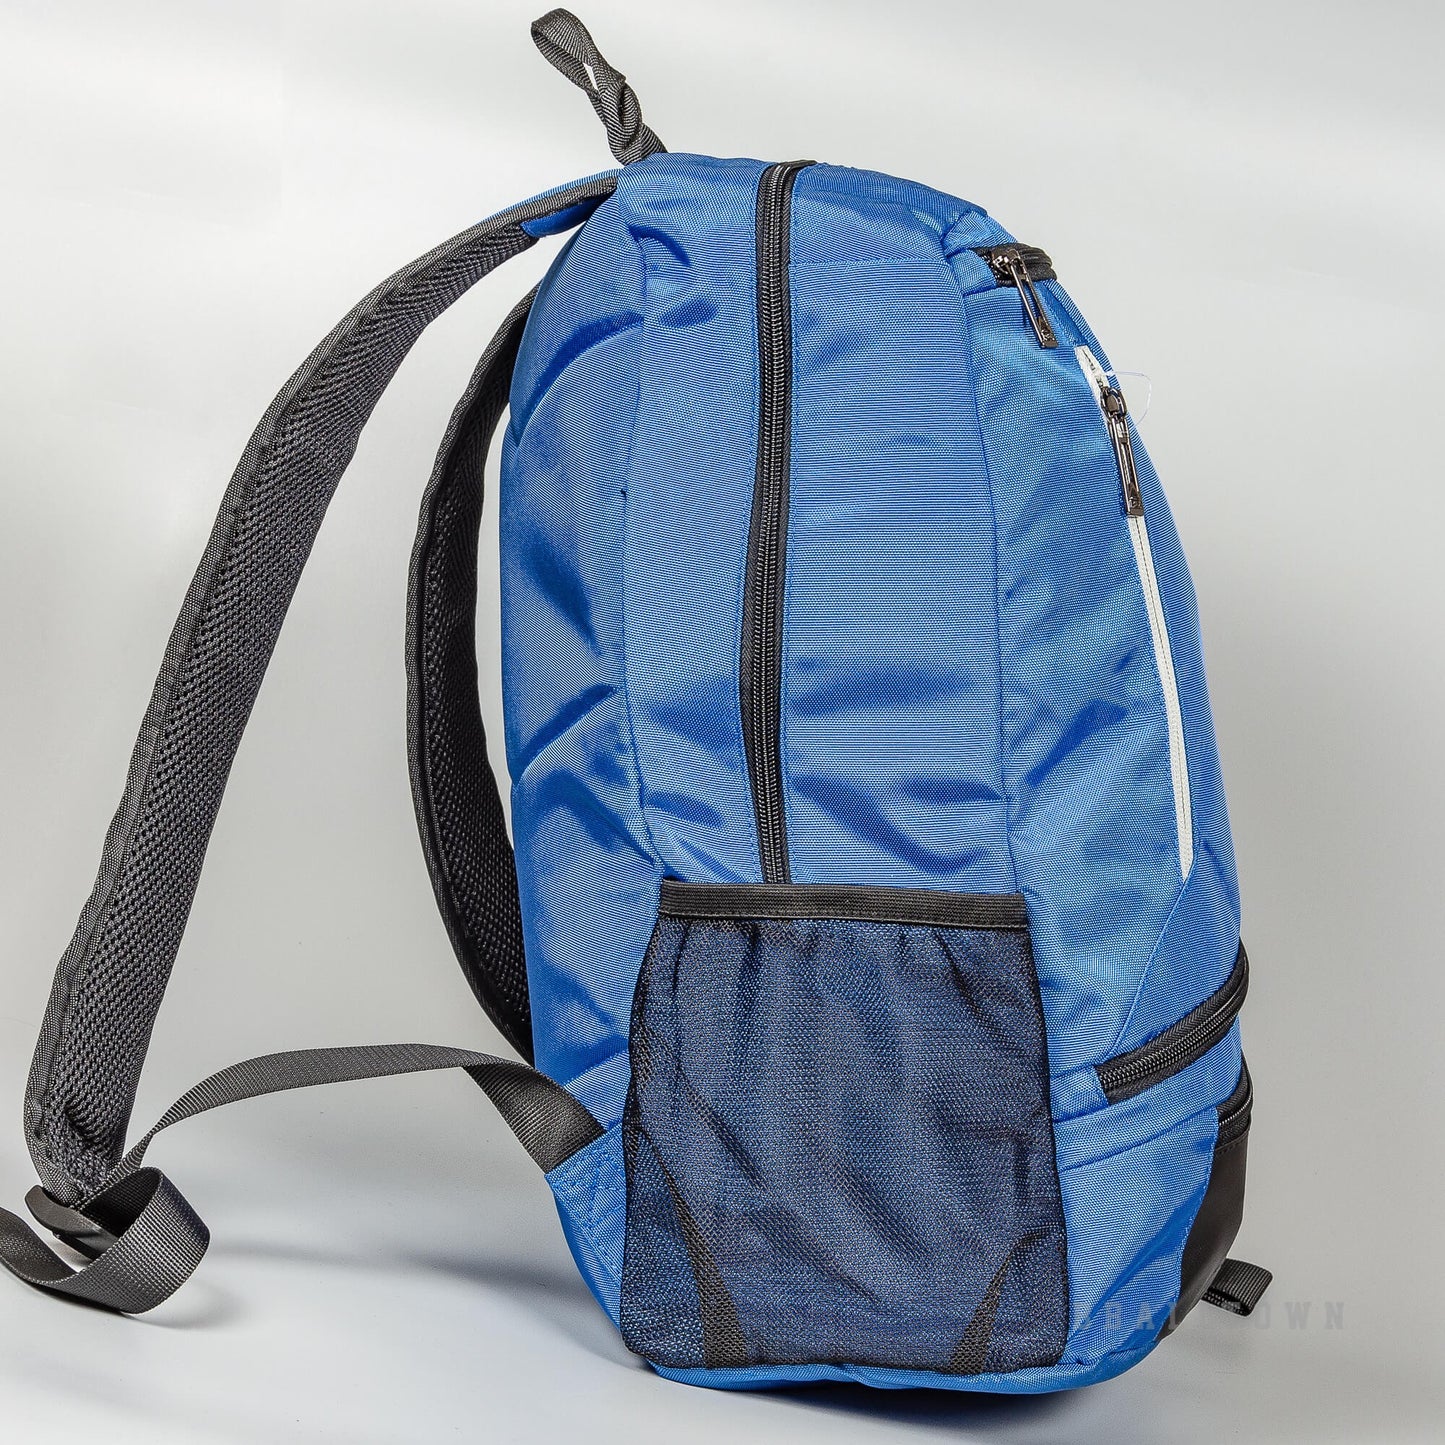 Peak Backpack New Blue/Dk.Grey